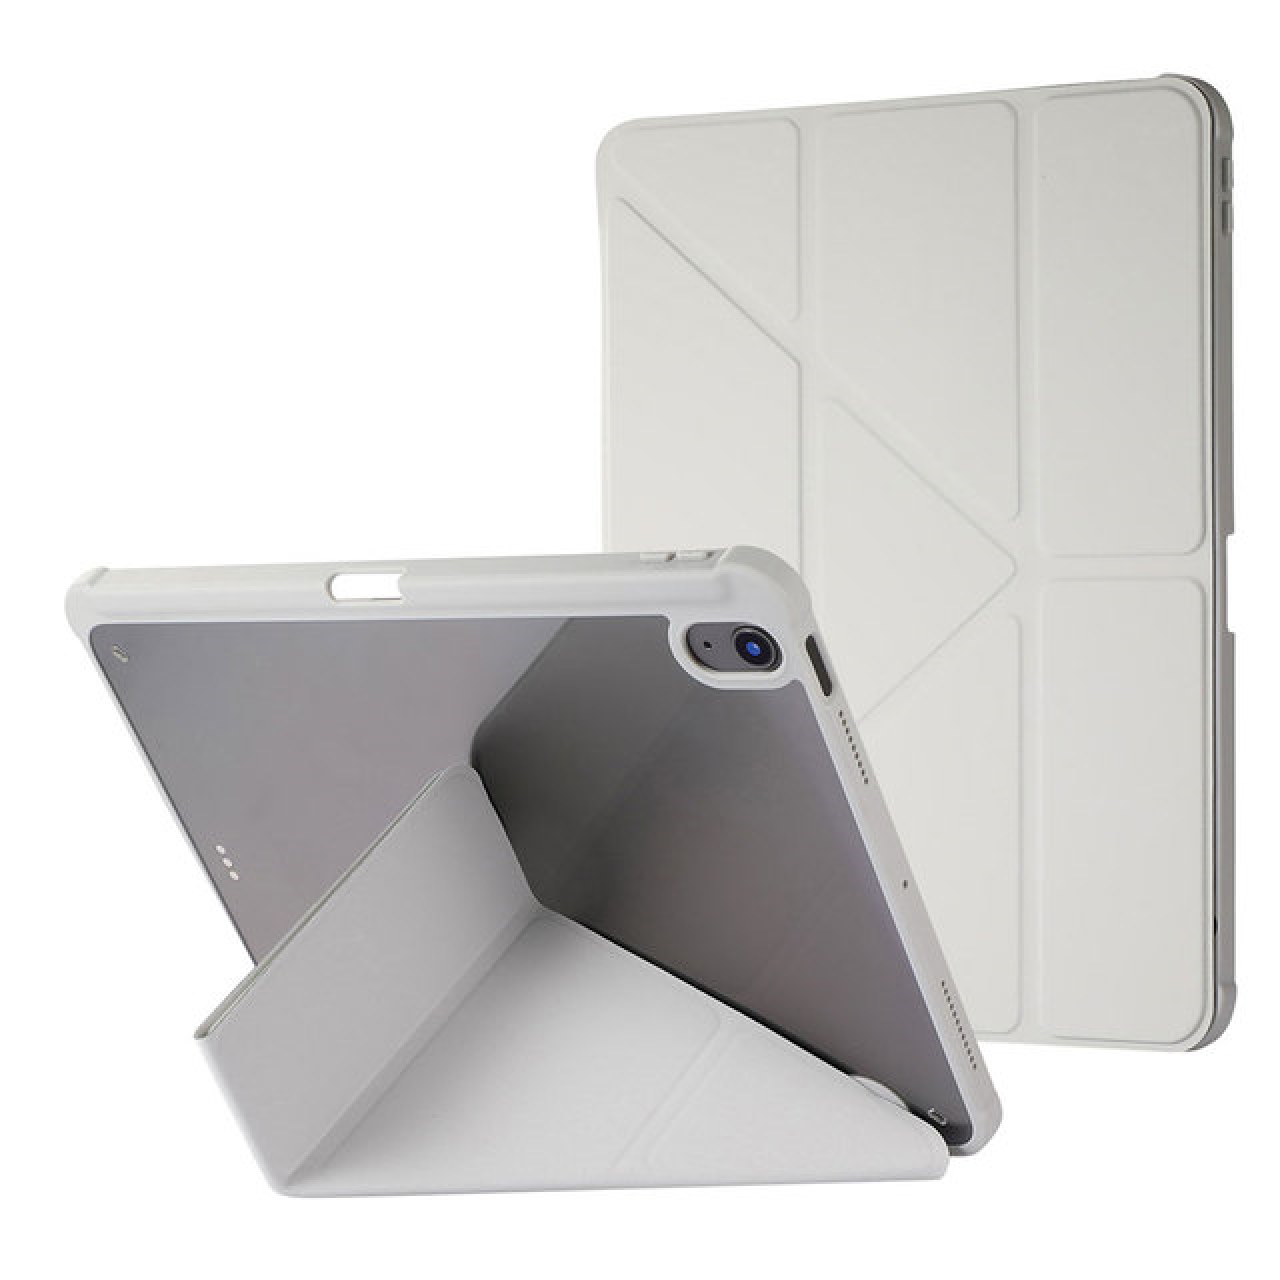 Θήκη Τάμπλετ Μαγνητική Apple iPad Air 3 pro 10.5 inch με Προστασία Κάμερας και Θέση για Γραφίδα - Grey